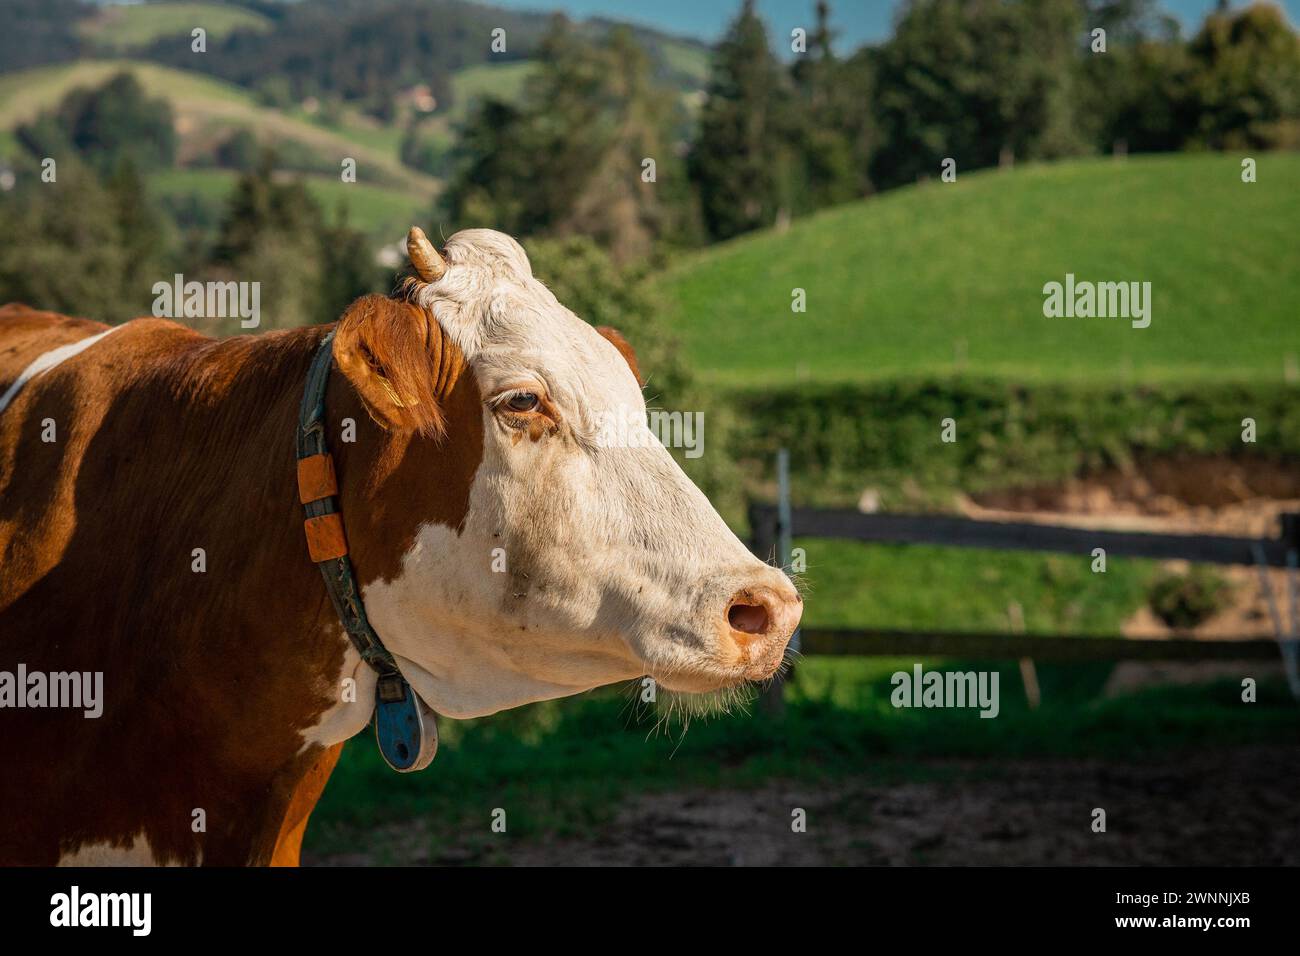 Nahporträt einer braunen und weißen Kuh, die auf dem Land herumläuft. Wunderschöne Kuh vor grüner Kulisse, umweltfreundlicher Bauernhof. Stockfoto